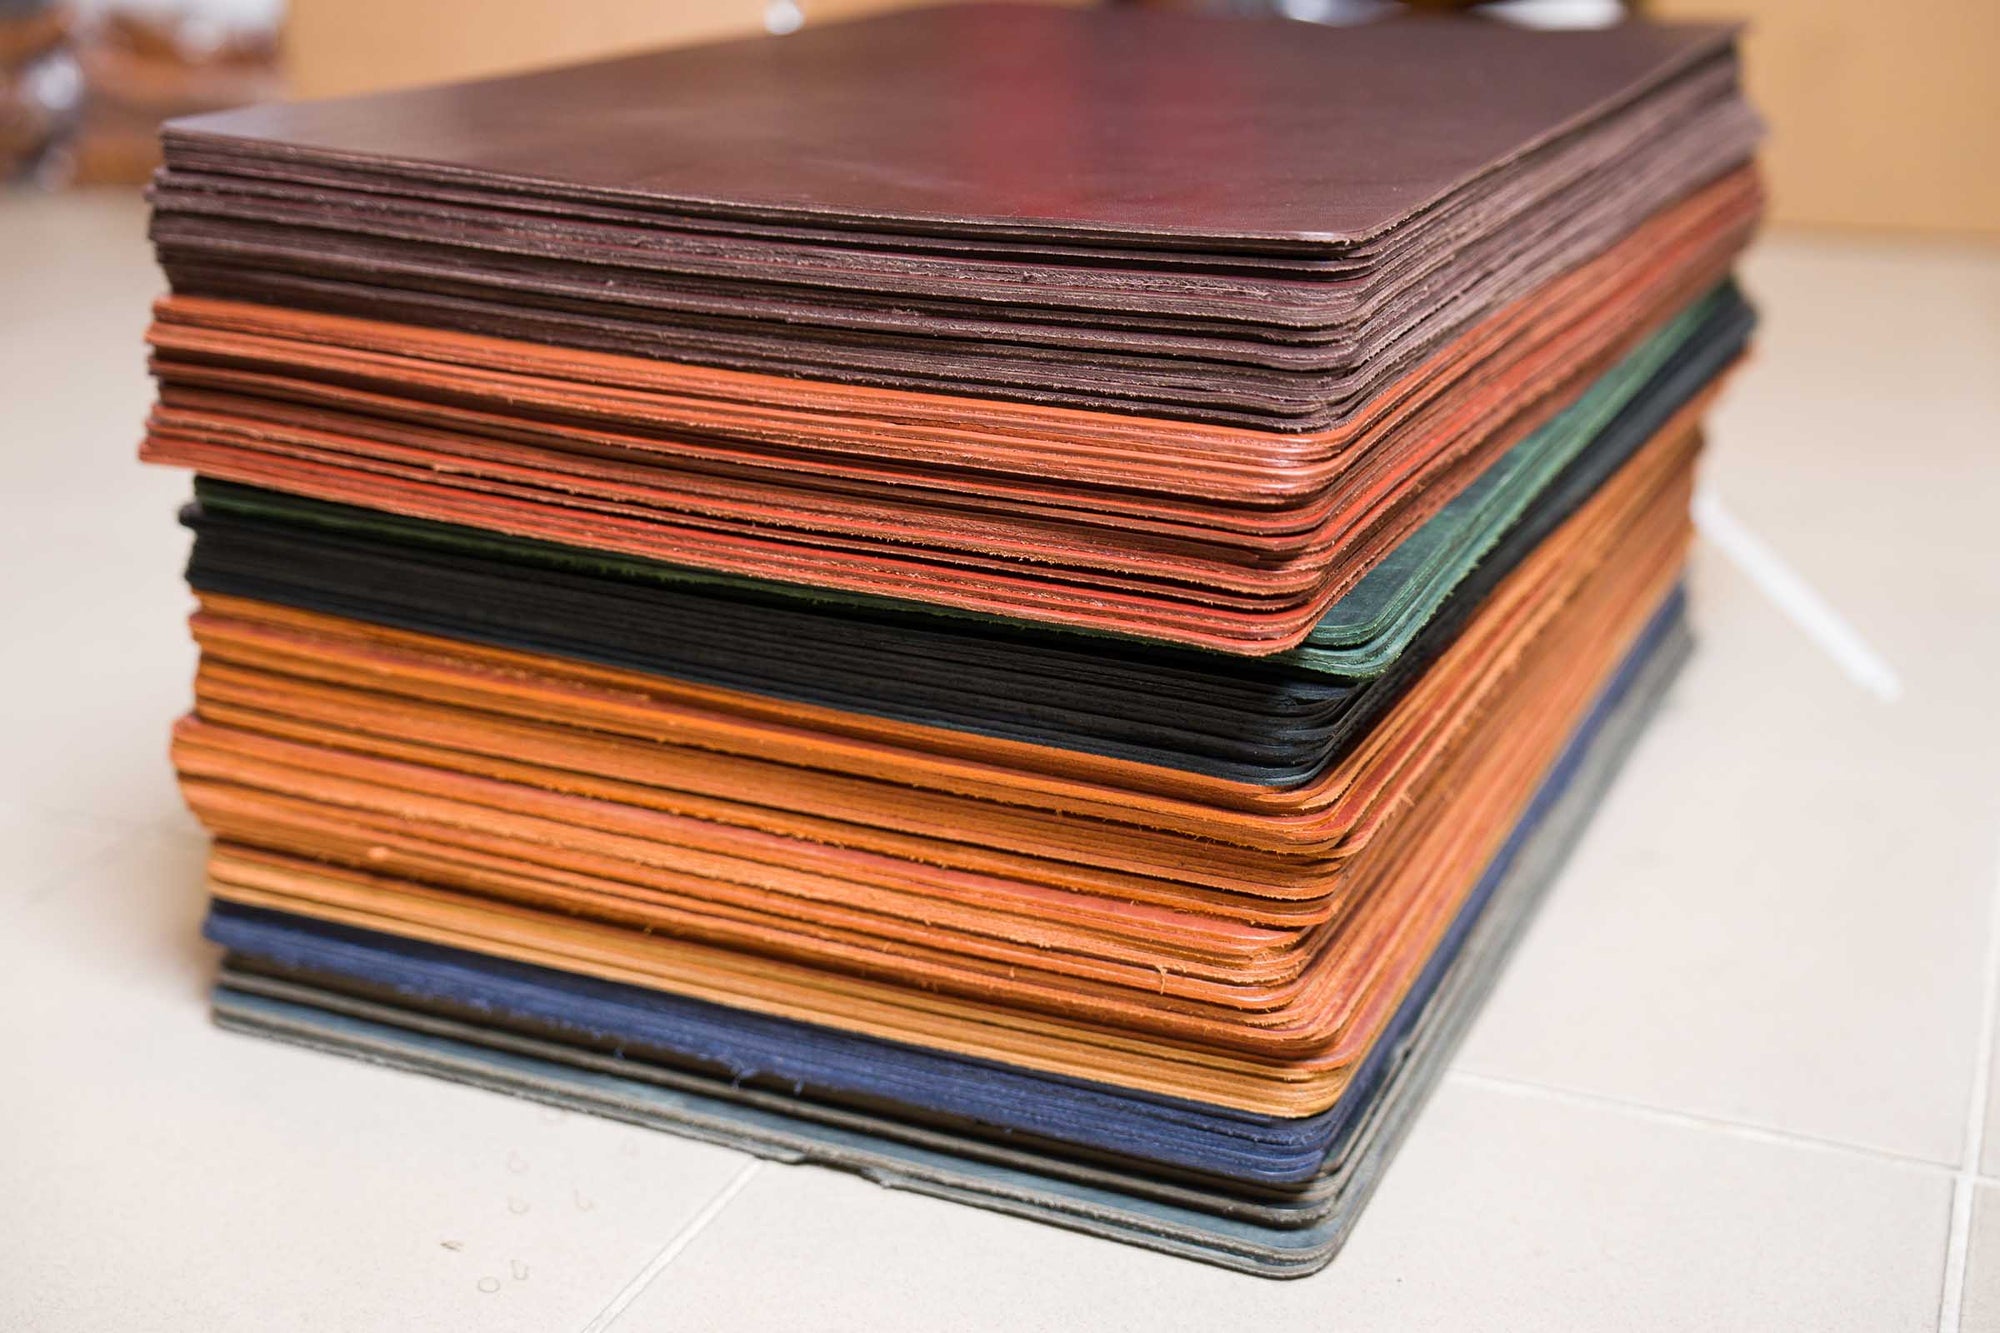 SECONDS  Leather Desk Pad 15" x 24" - Multiple Colors - 543